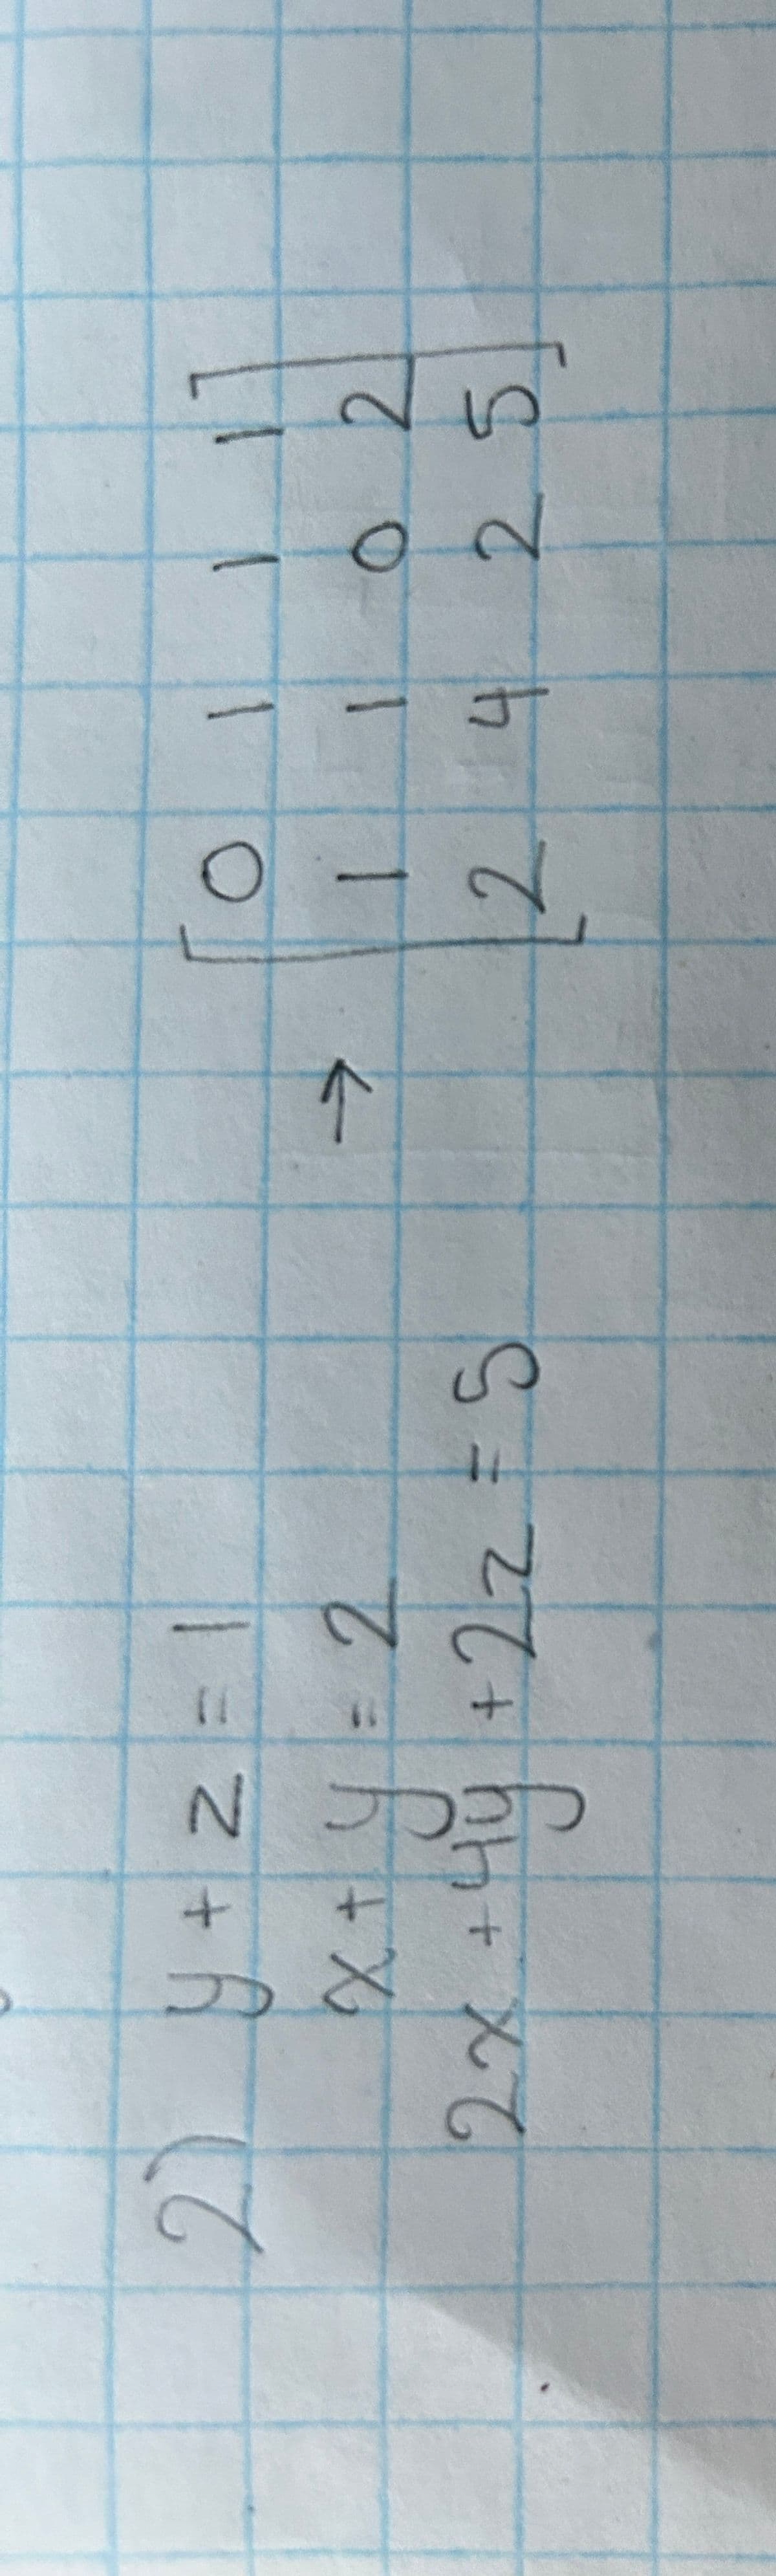 2 y + z = 1
x + y = 2
x₂
यह
S = ²6+ b₂+ X6
←
24
02
25
SZ h